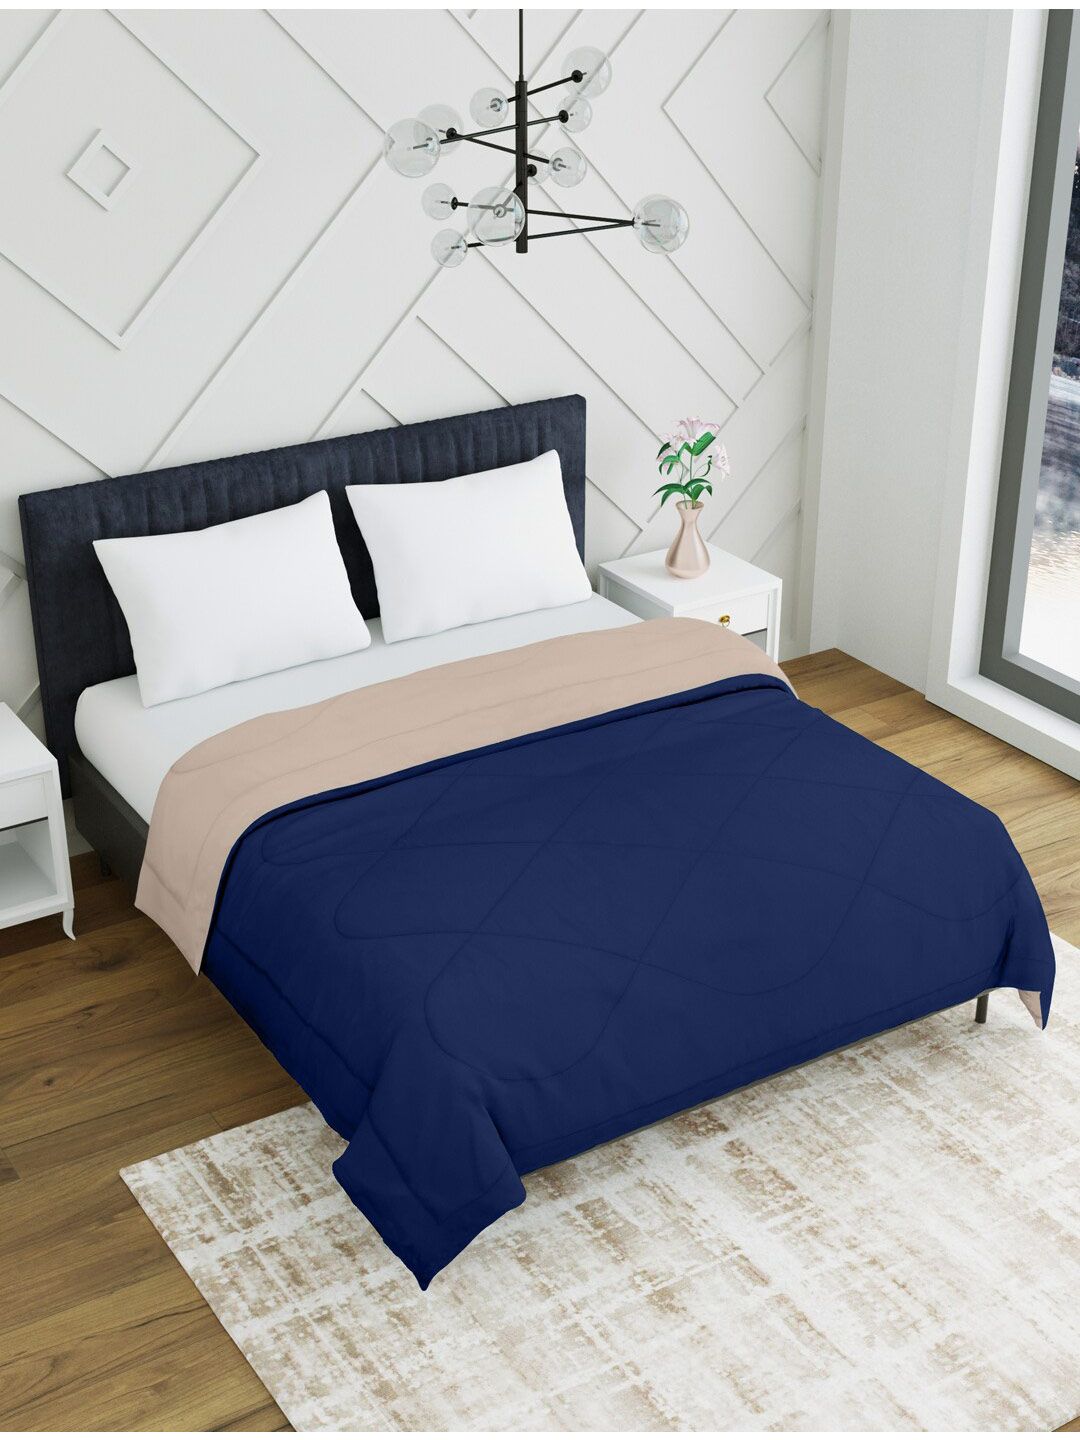 EverHOME Beige & Navy Blue Microfiber Mild Winter Double Bed Comforter Price in India